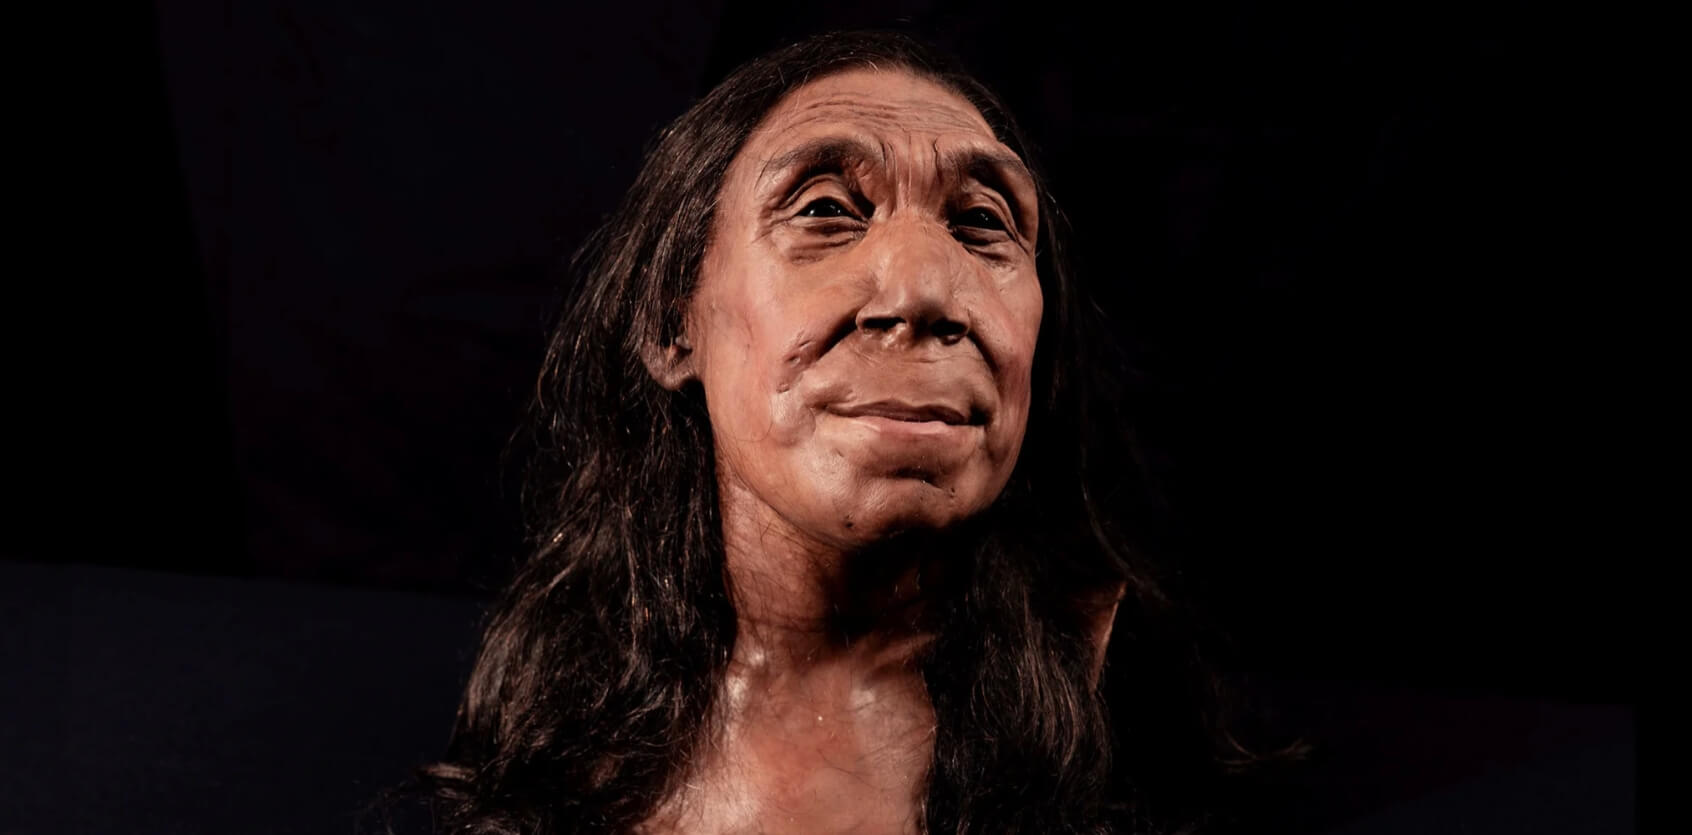 Как выглядели неандертальцы-женщины. Реконструкция внешнего вида 40-летней неандерталки, жившей 75 000 лет назад. Источник изображения: University of Cambridge. Фото.